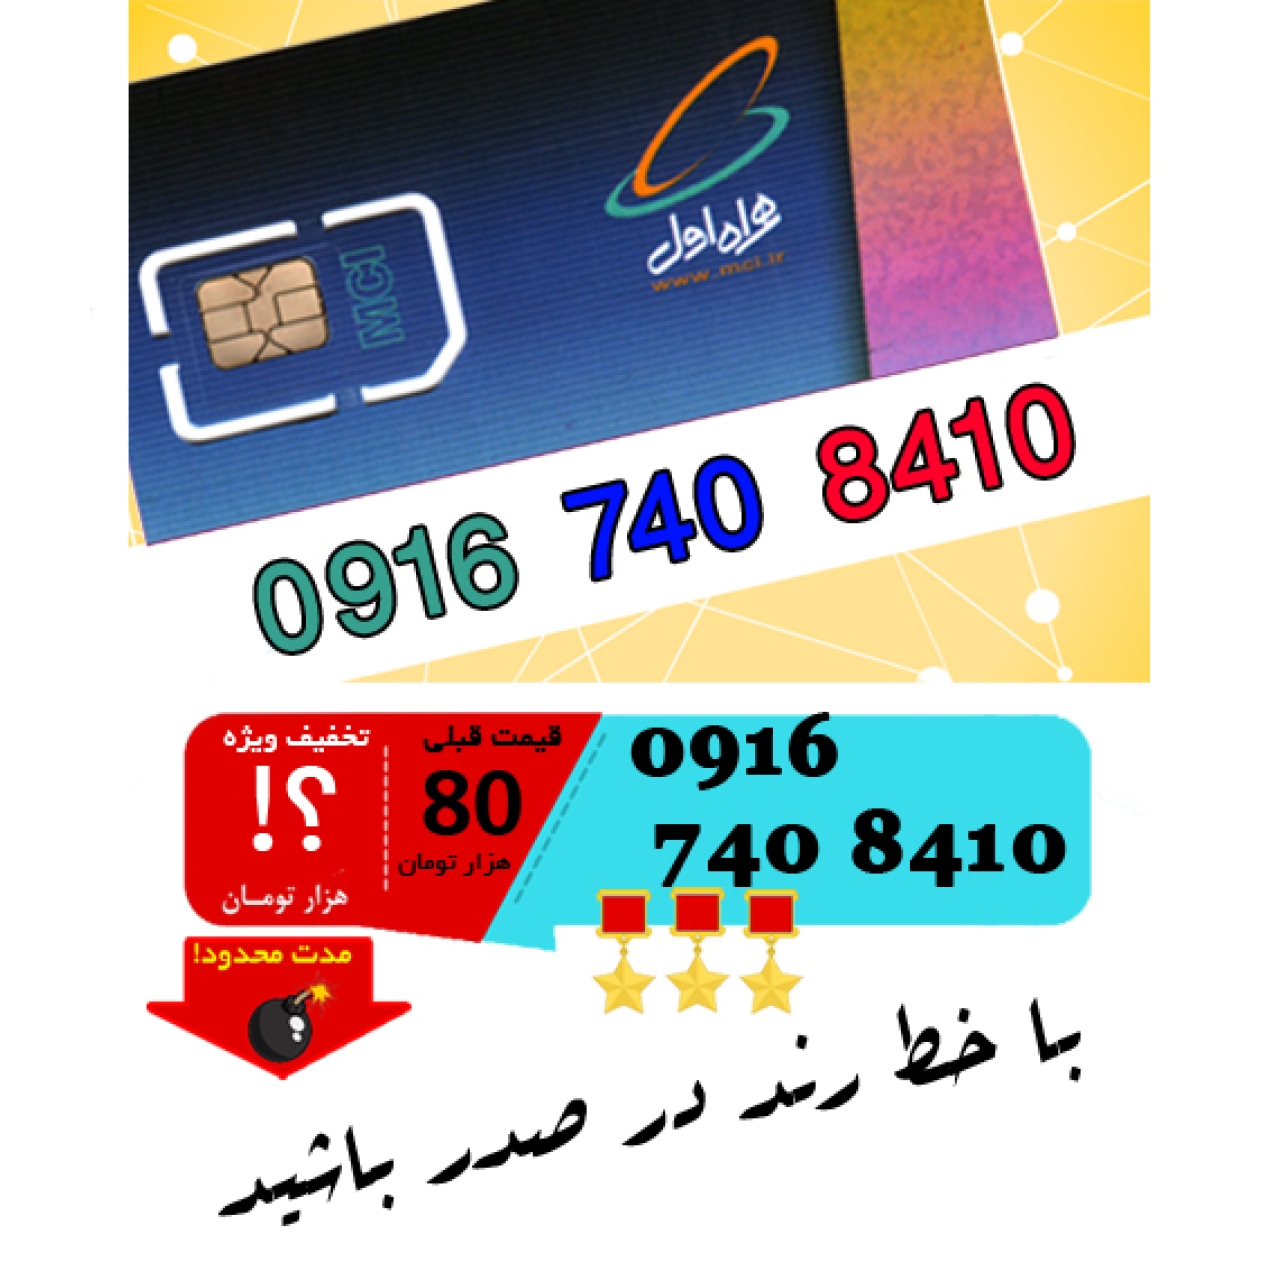 سیم کارت اعتباری رند همراه اول 09167408410